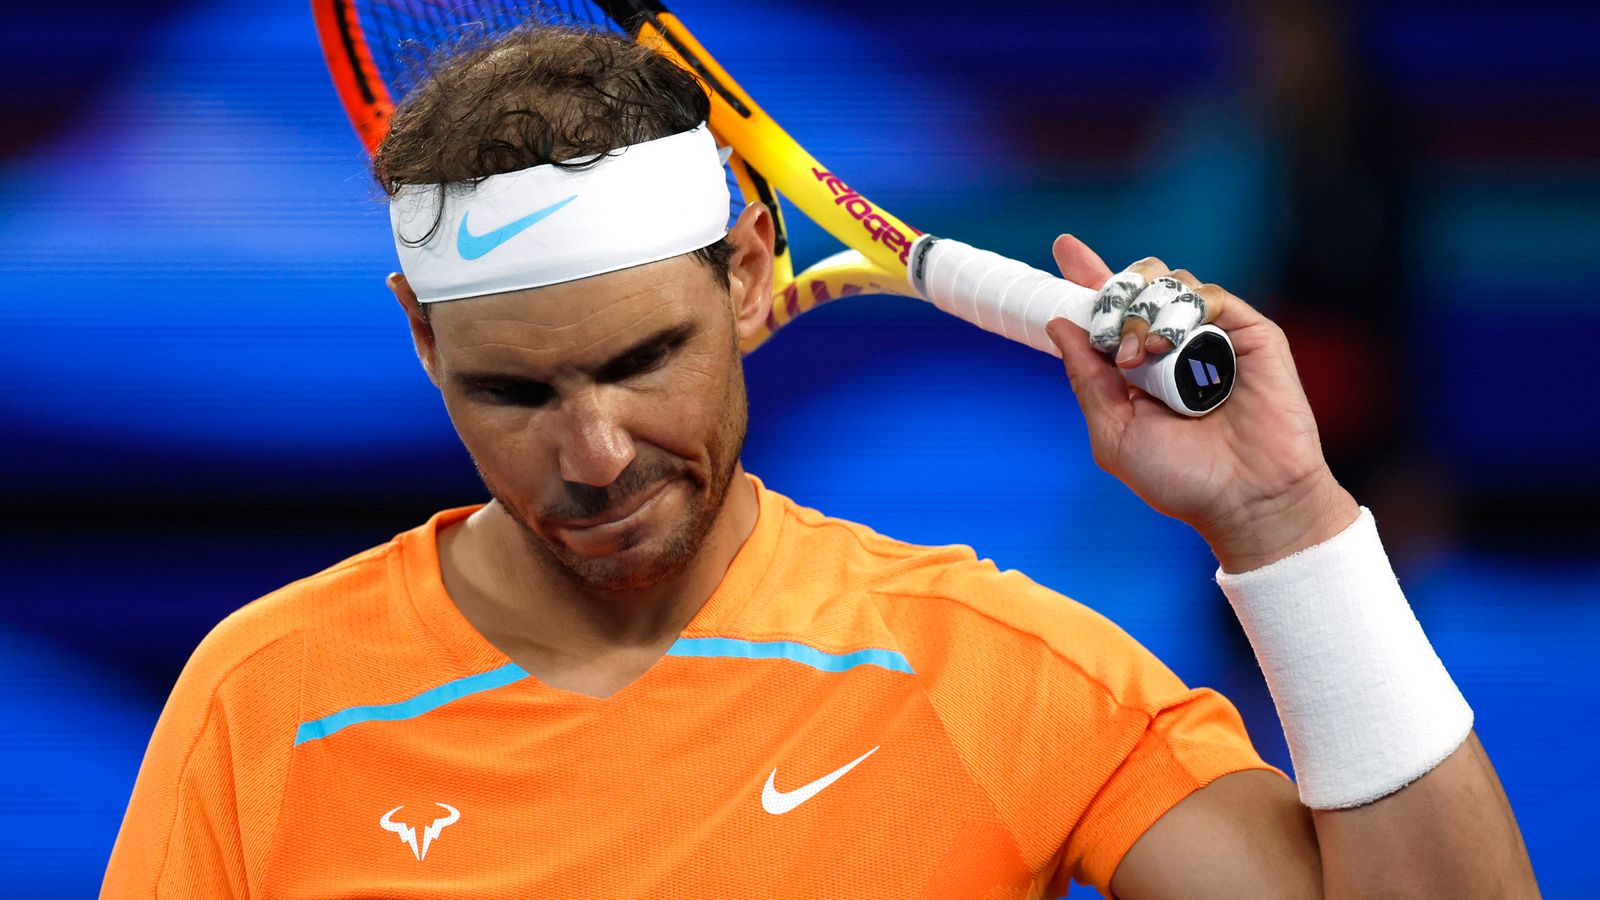 Abierto de Australia: el máximo favorito y campeón defensor Rafael Nadal noqueado por Mackenzie McDonald |  Noticias de tenis